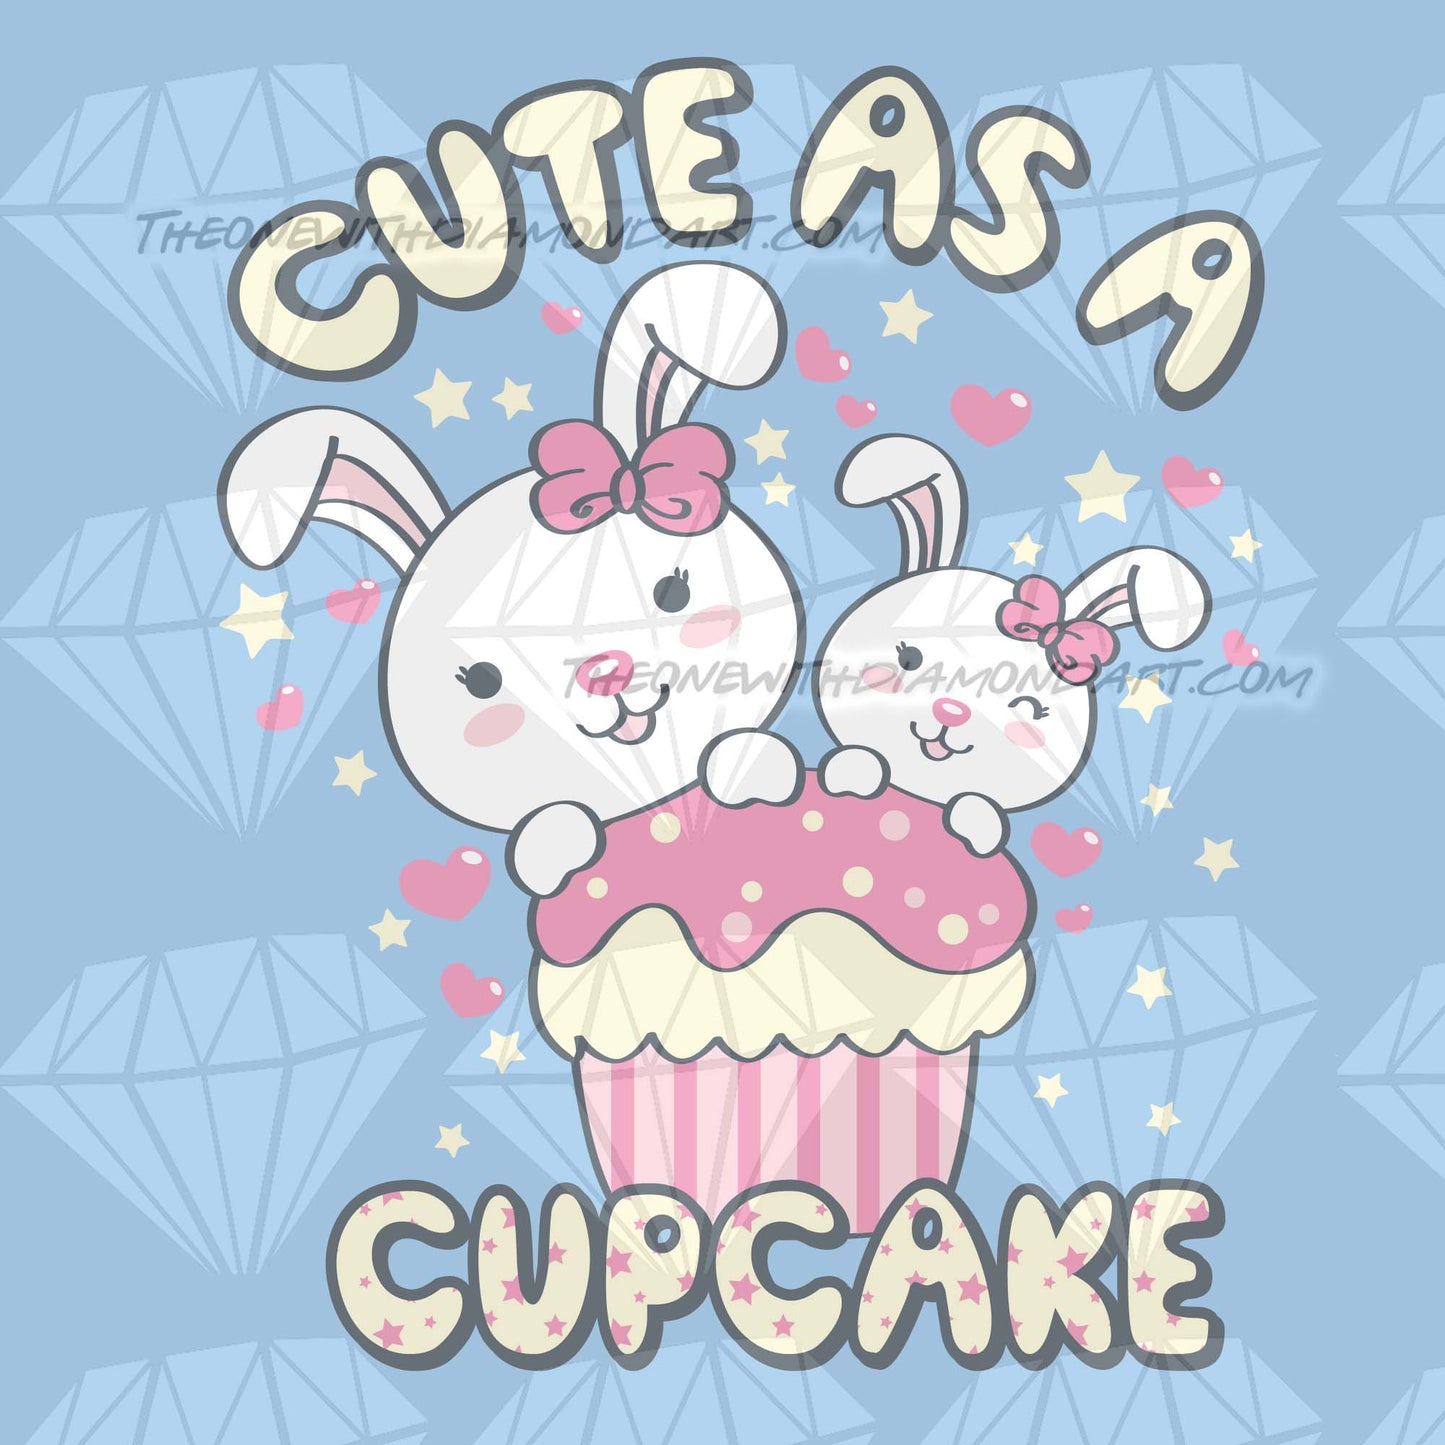 Cute As A Cupcake